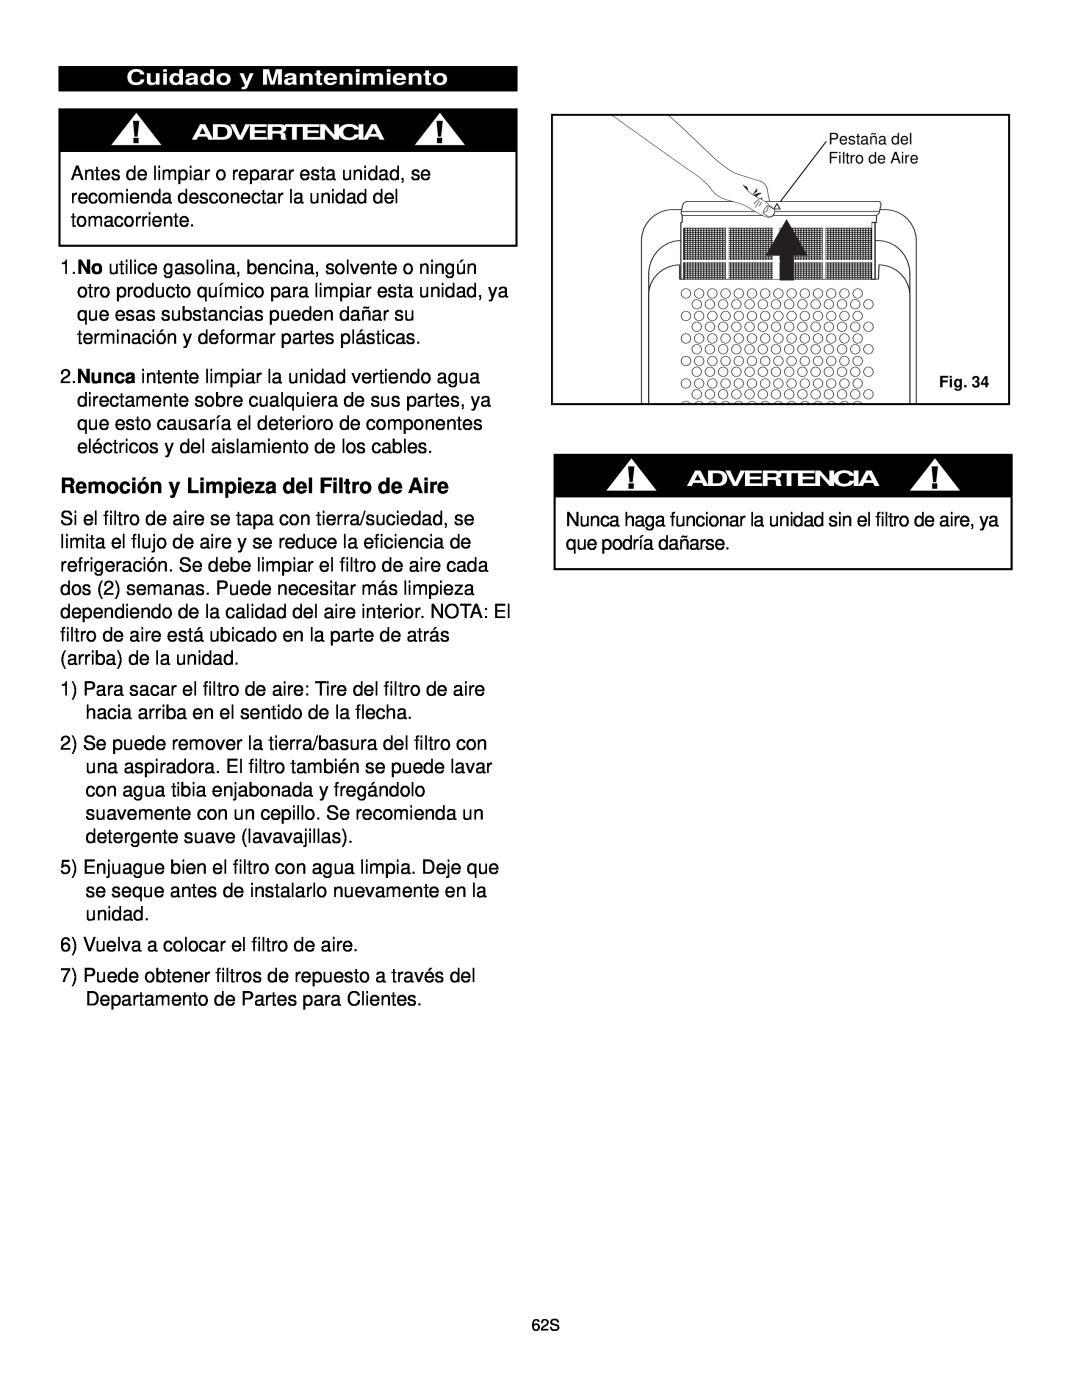 Danby DPAC10030 manual Cuidado y Mantenimiento ADVERTENCIA, Remoción y Limpieza del Filtro de Aire, Advertencia 